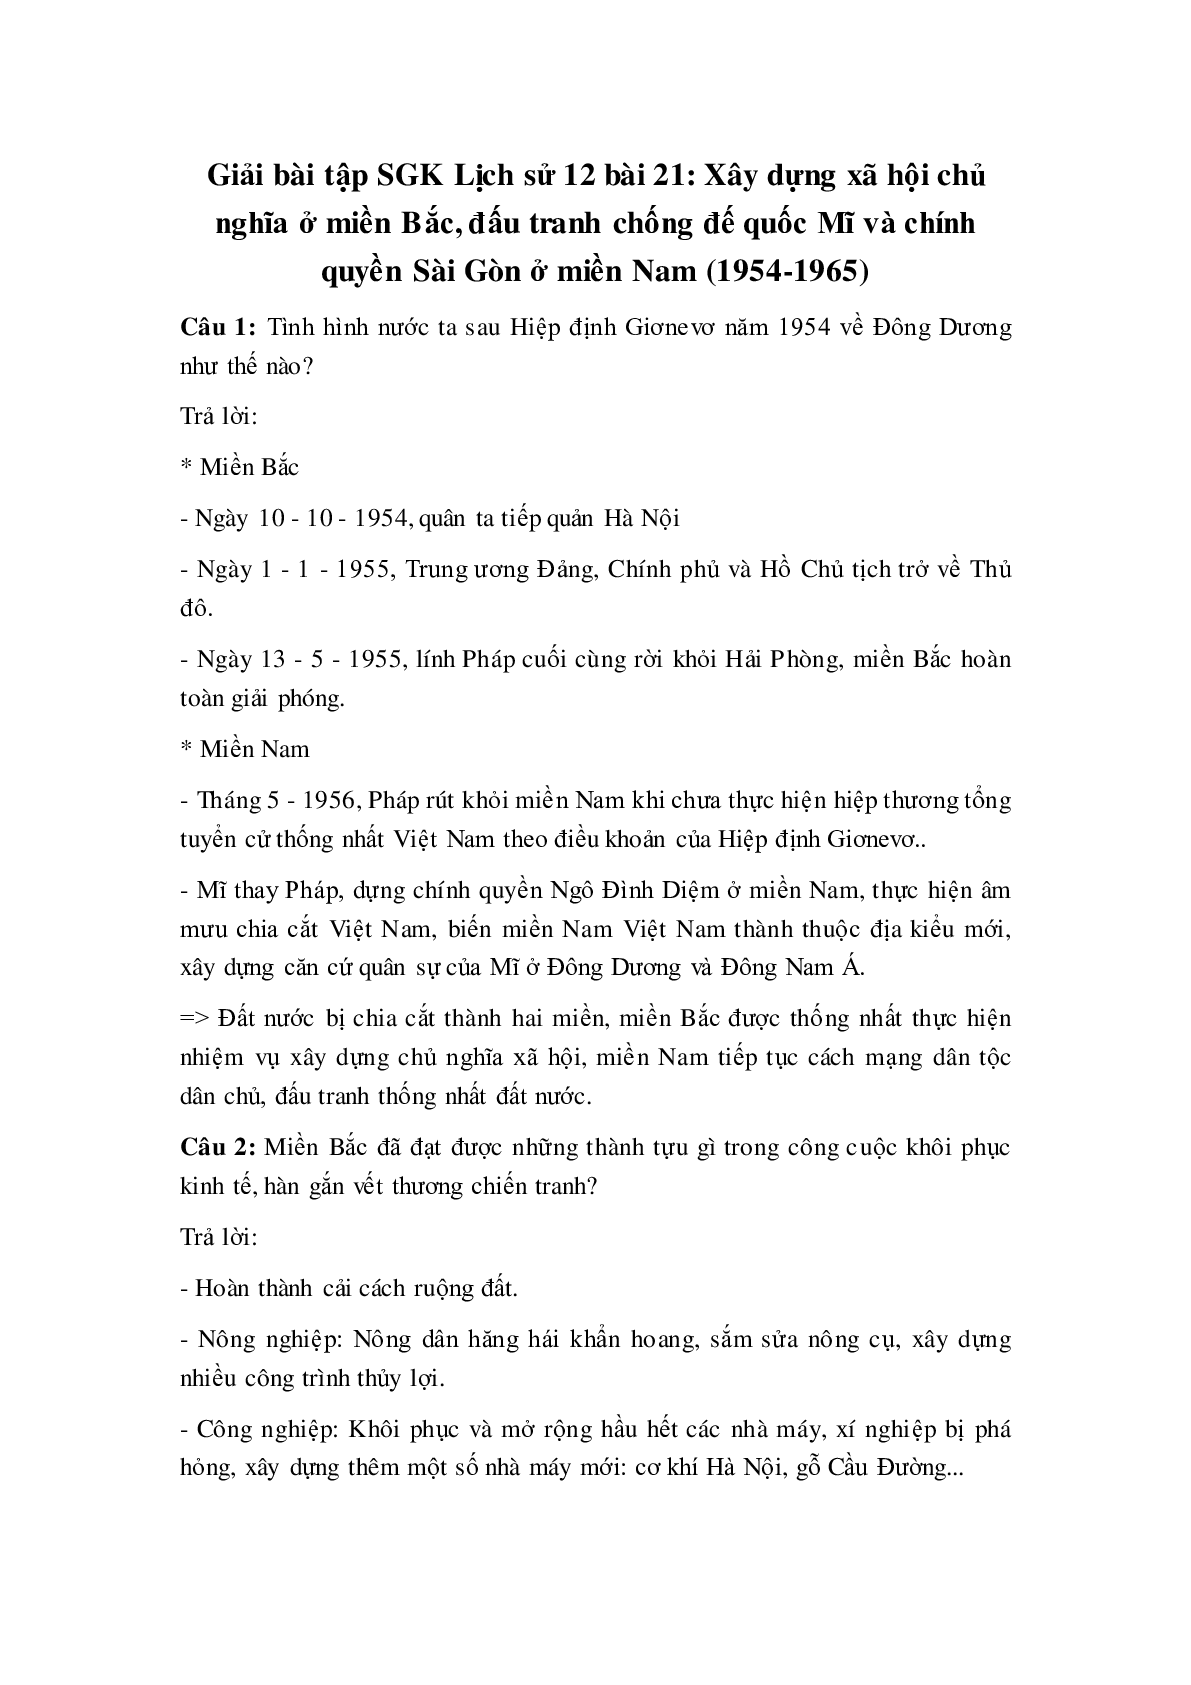 Giải bài tập SGK Lịch sử 12: Bài 21: Xây dựng xã hội chủ nghĩa ở miền Bắc, đấu tranh chống đế quốc Mĩ và chính quyền Sài Gòn ở miền Nam (1954-1965) mới nhất (trang 1)